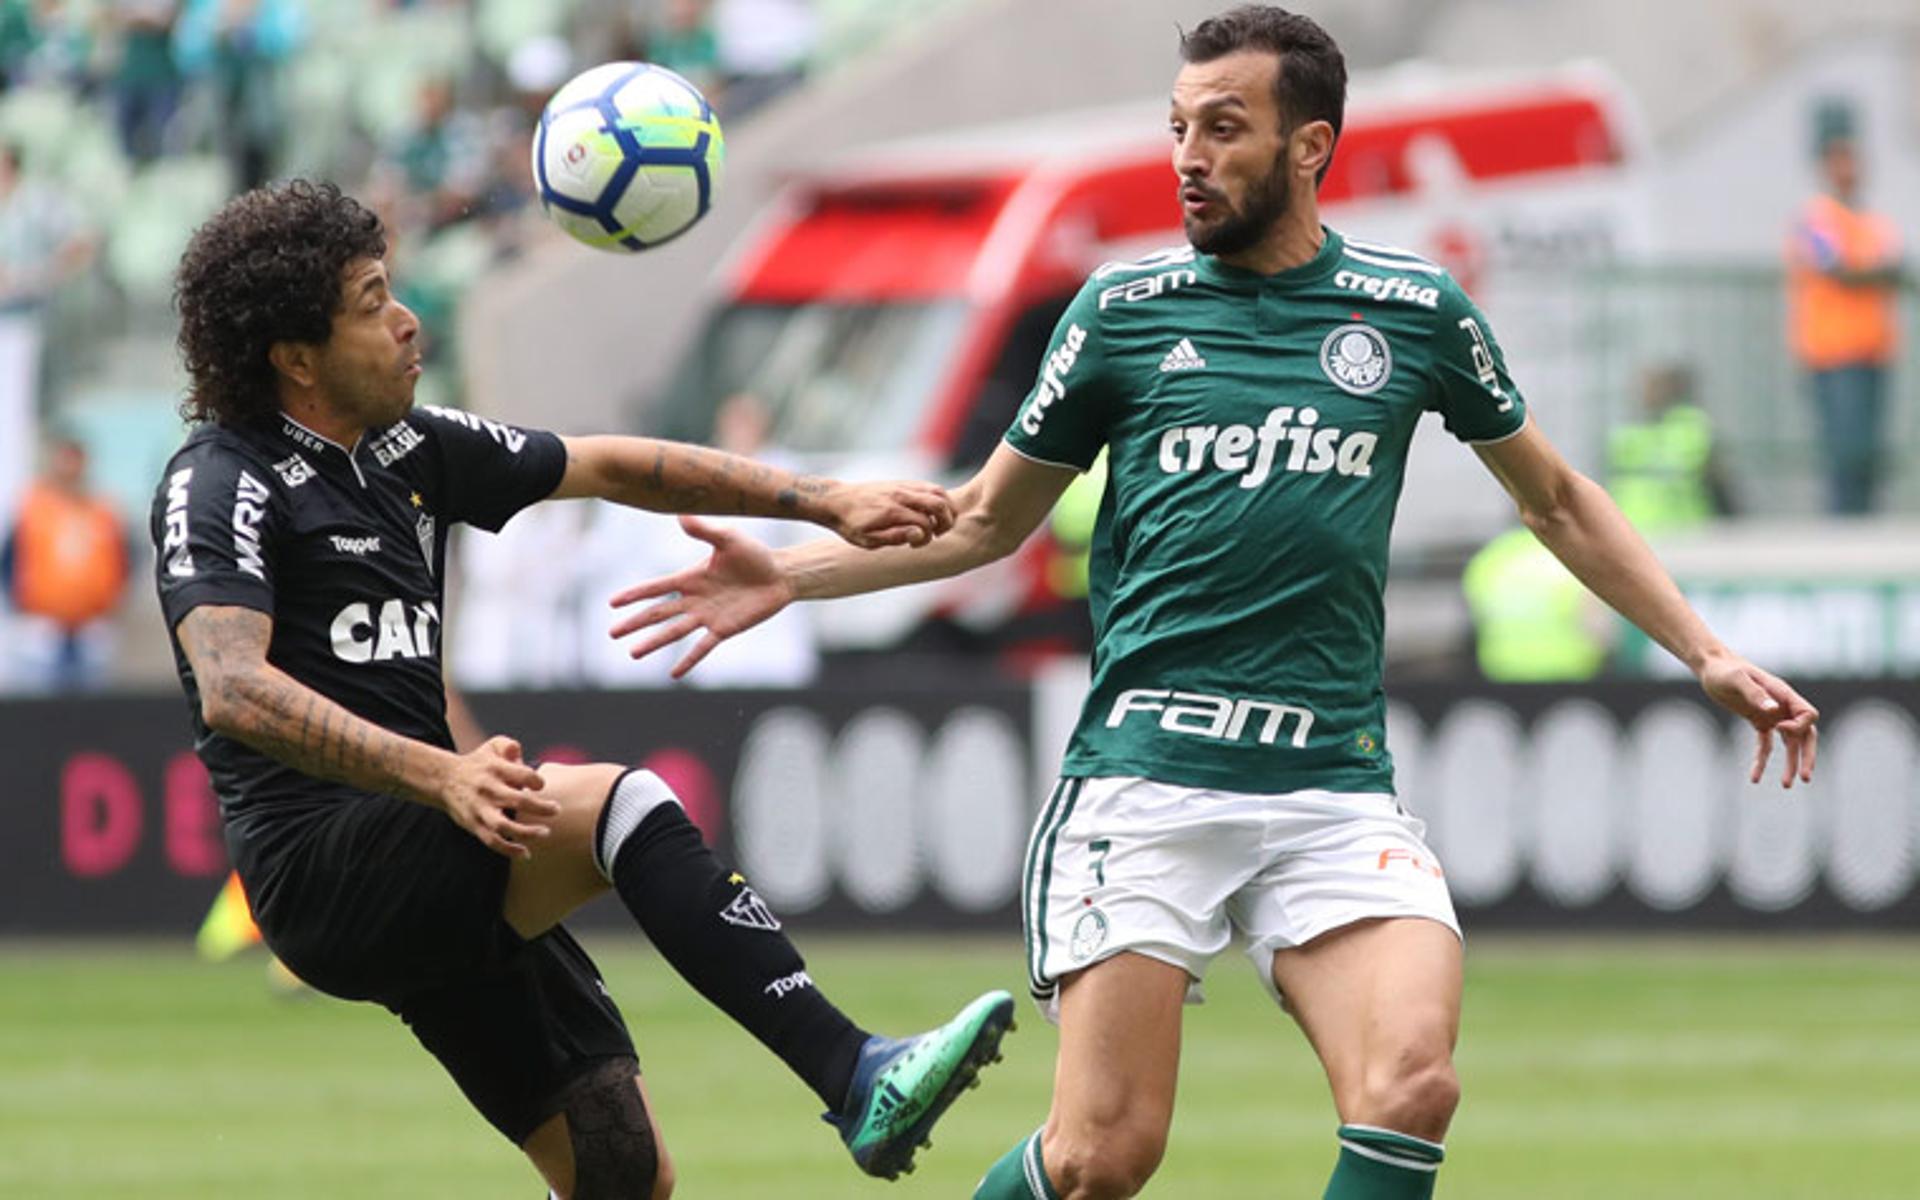 Último encontro: 22/7/2018 - Palmeiras 3 x 2 Atlético-MG